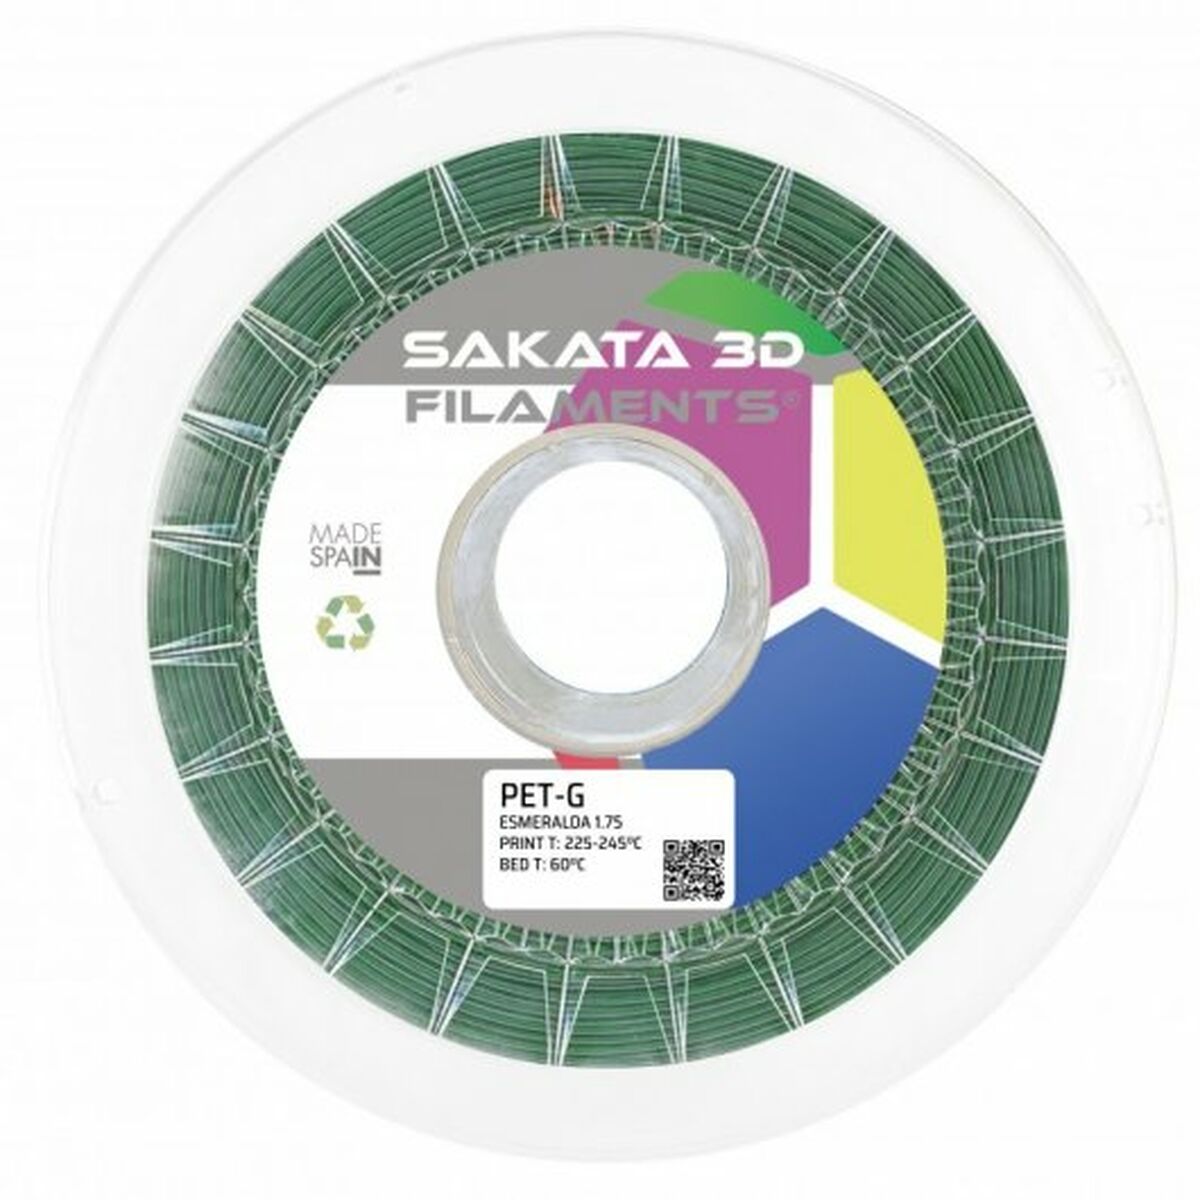 Filament Reel Sakata 3D 10644123 PET-G Ø 1,75 mm Green